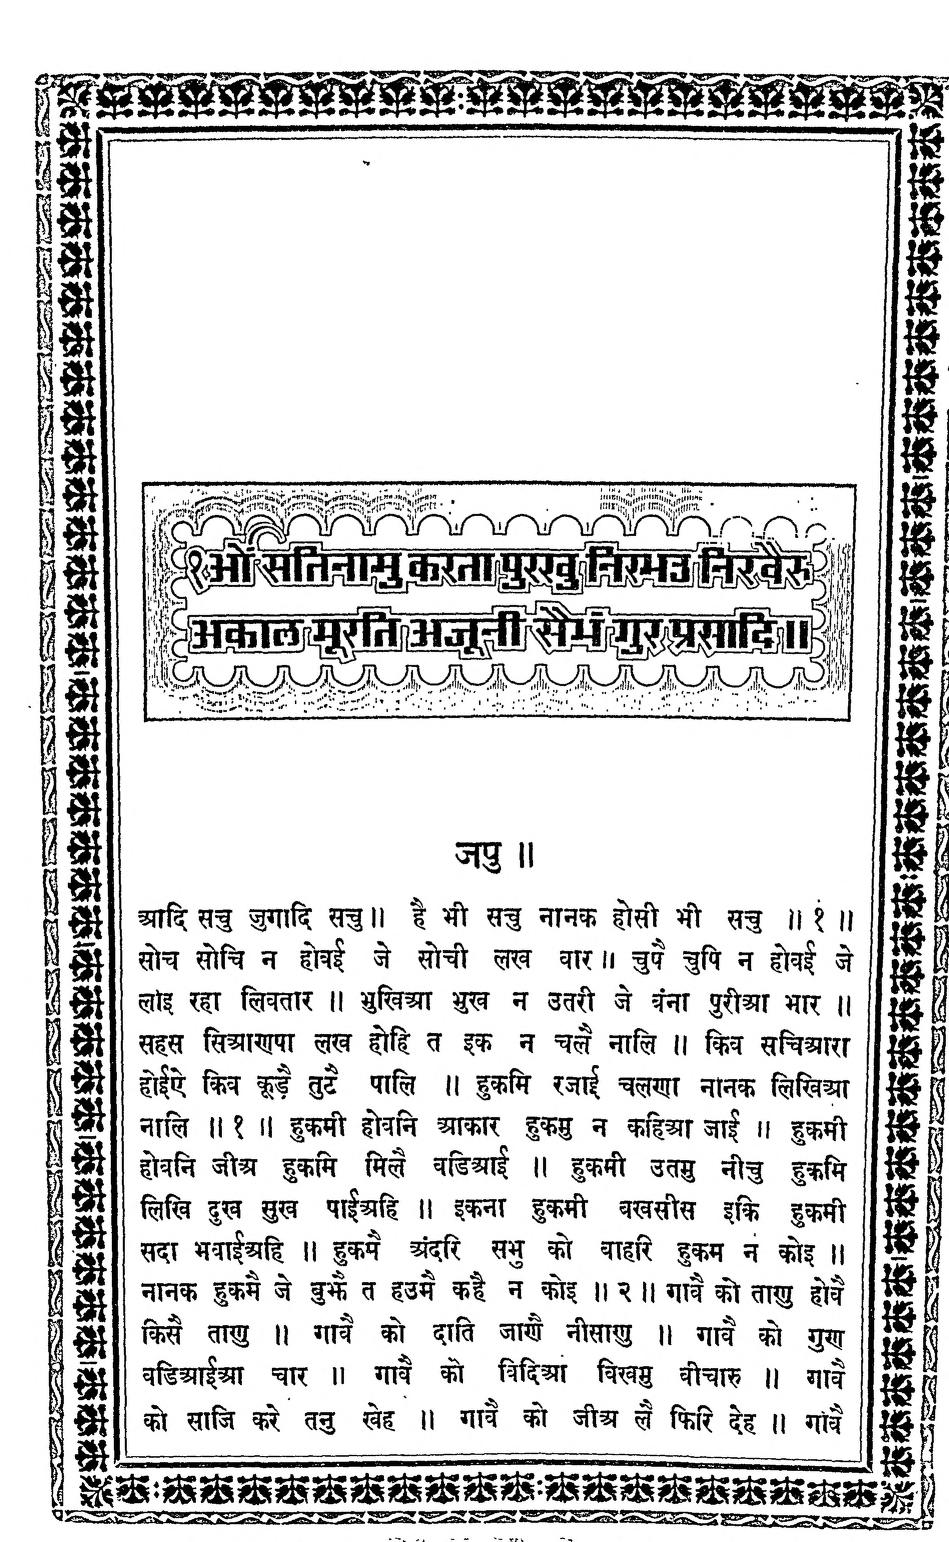 guru granth sahib pdf with vishram